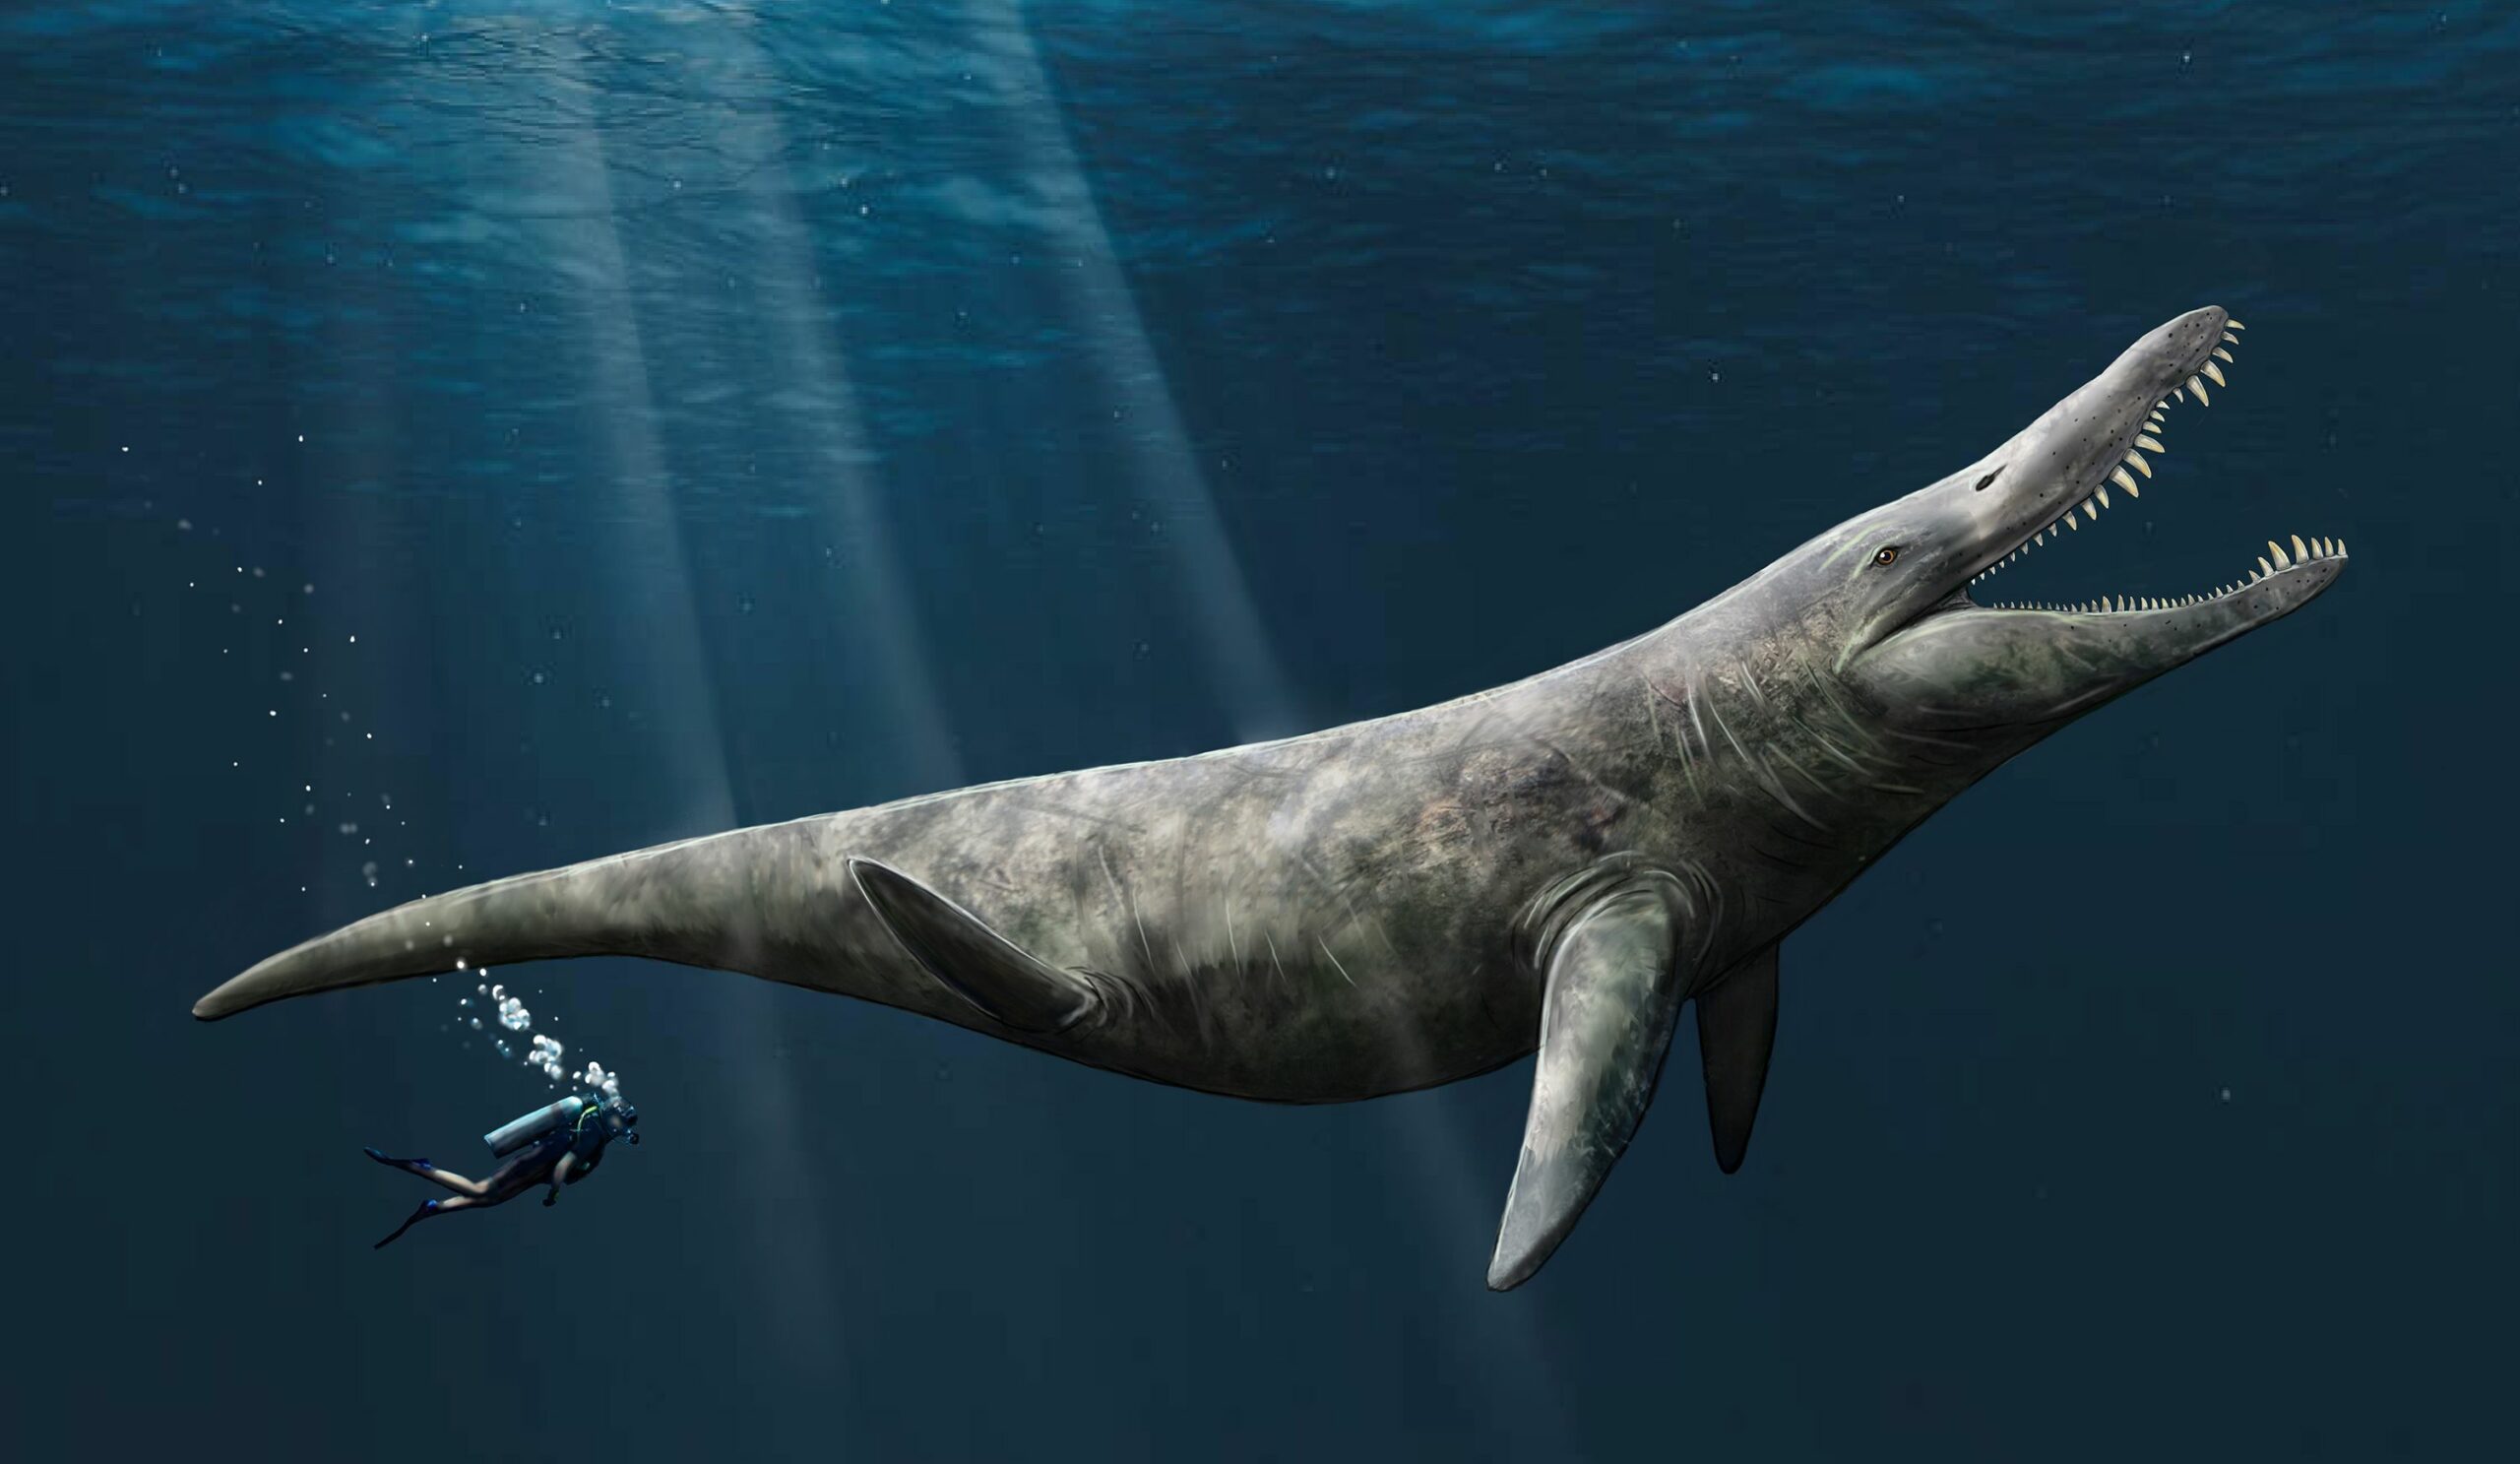 Rappresentazione artistica del pliosauro. I paleontologi dell'Università di Portsmouth hanno scoperto prove che suggeriscono che i pliosauri, strettamente imparentati con il Liopleurodon, avrebbero potuto raggiungere fino a 14.4 metri di lunghezza, il doppio delle dimensioni di un'orca assassina.